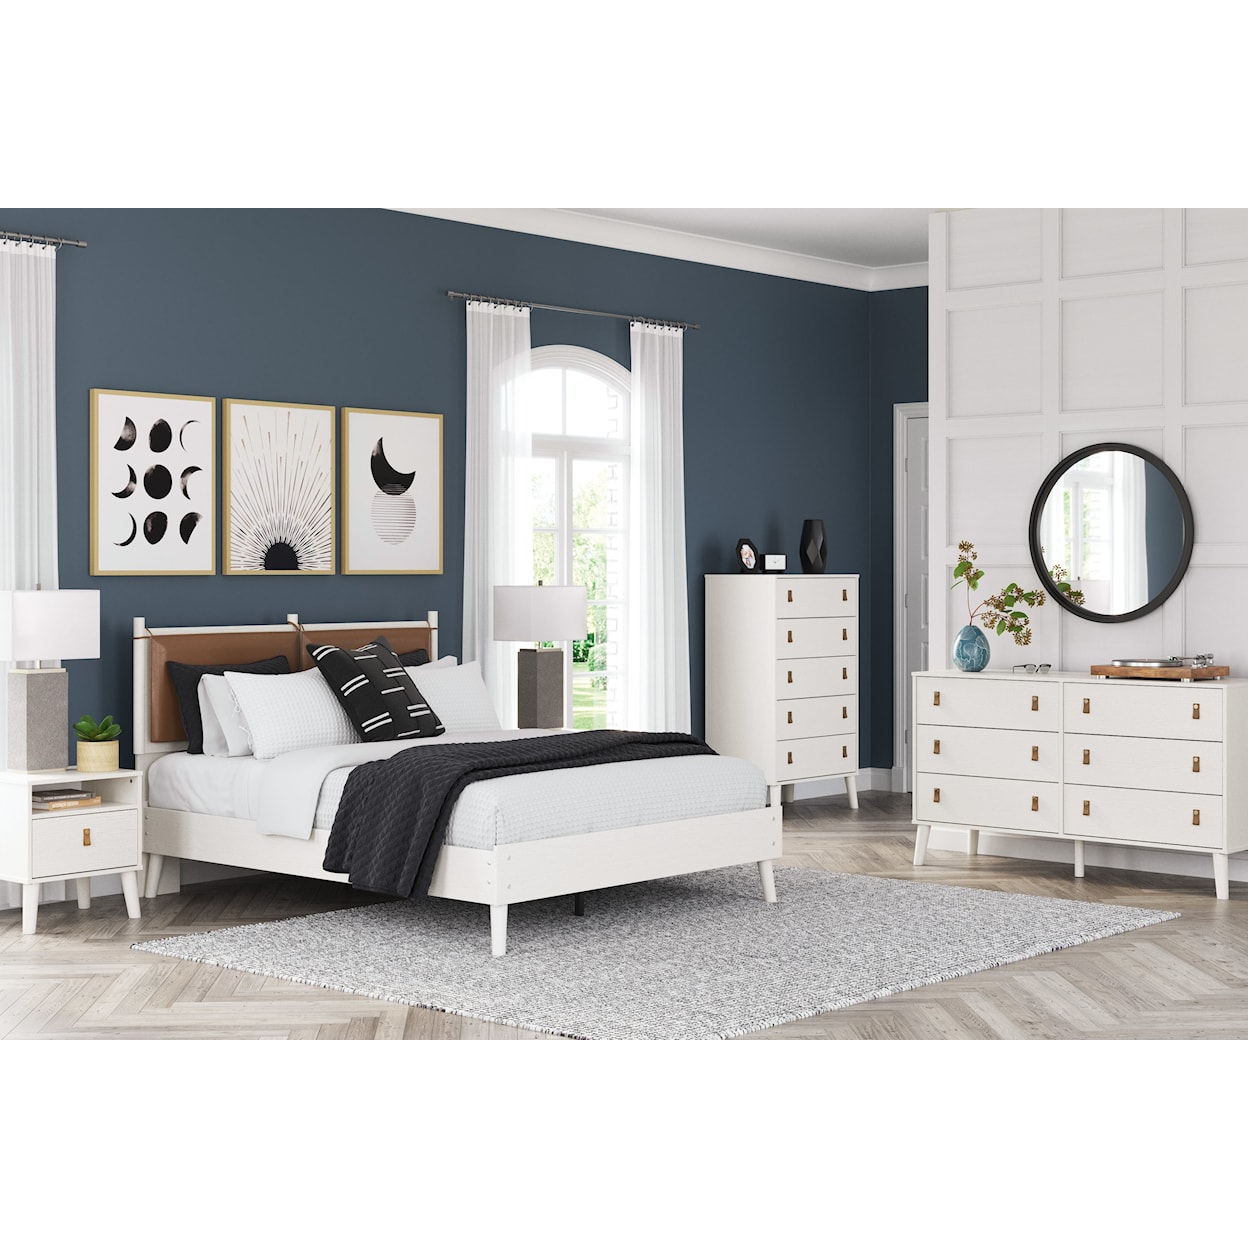 Ashley Furniture Signature Design Aprilyn Queen Bedroom Set